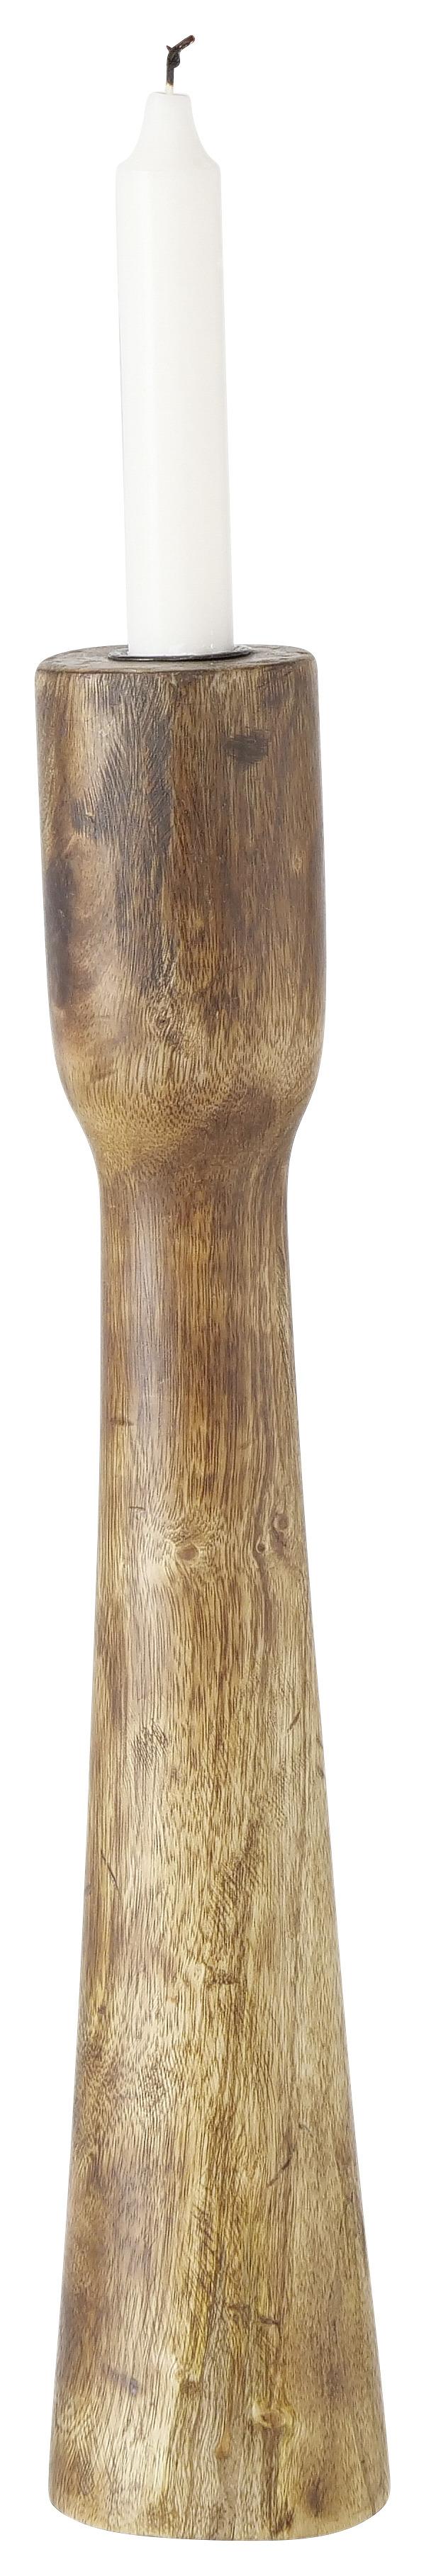 Stojan Na Svíčku Caldeas, V: 40cm - přírodní barvy, Moderní, dřevo (40cm) - Premium Living